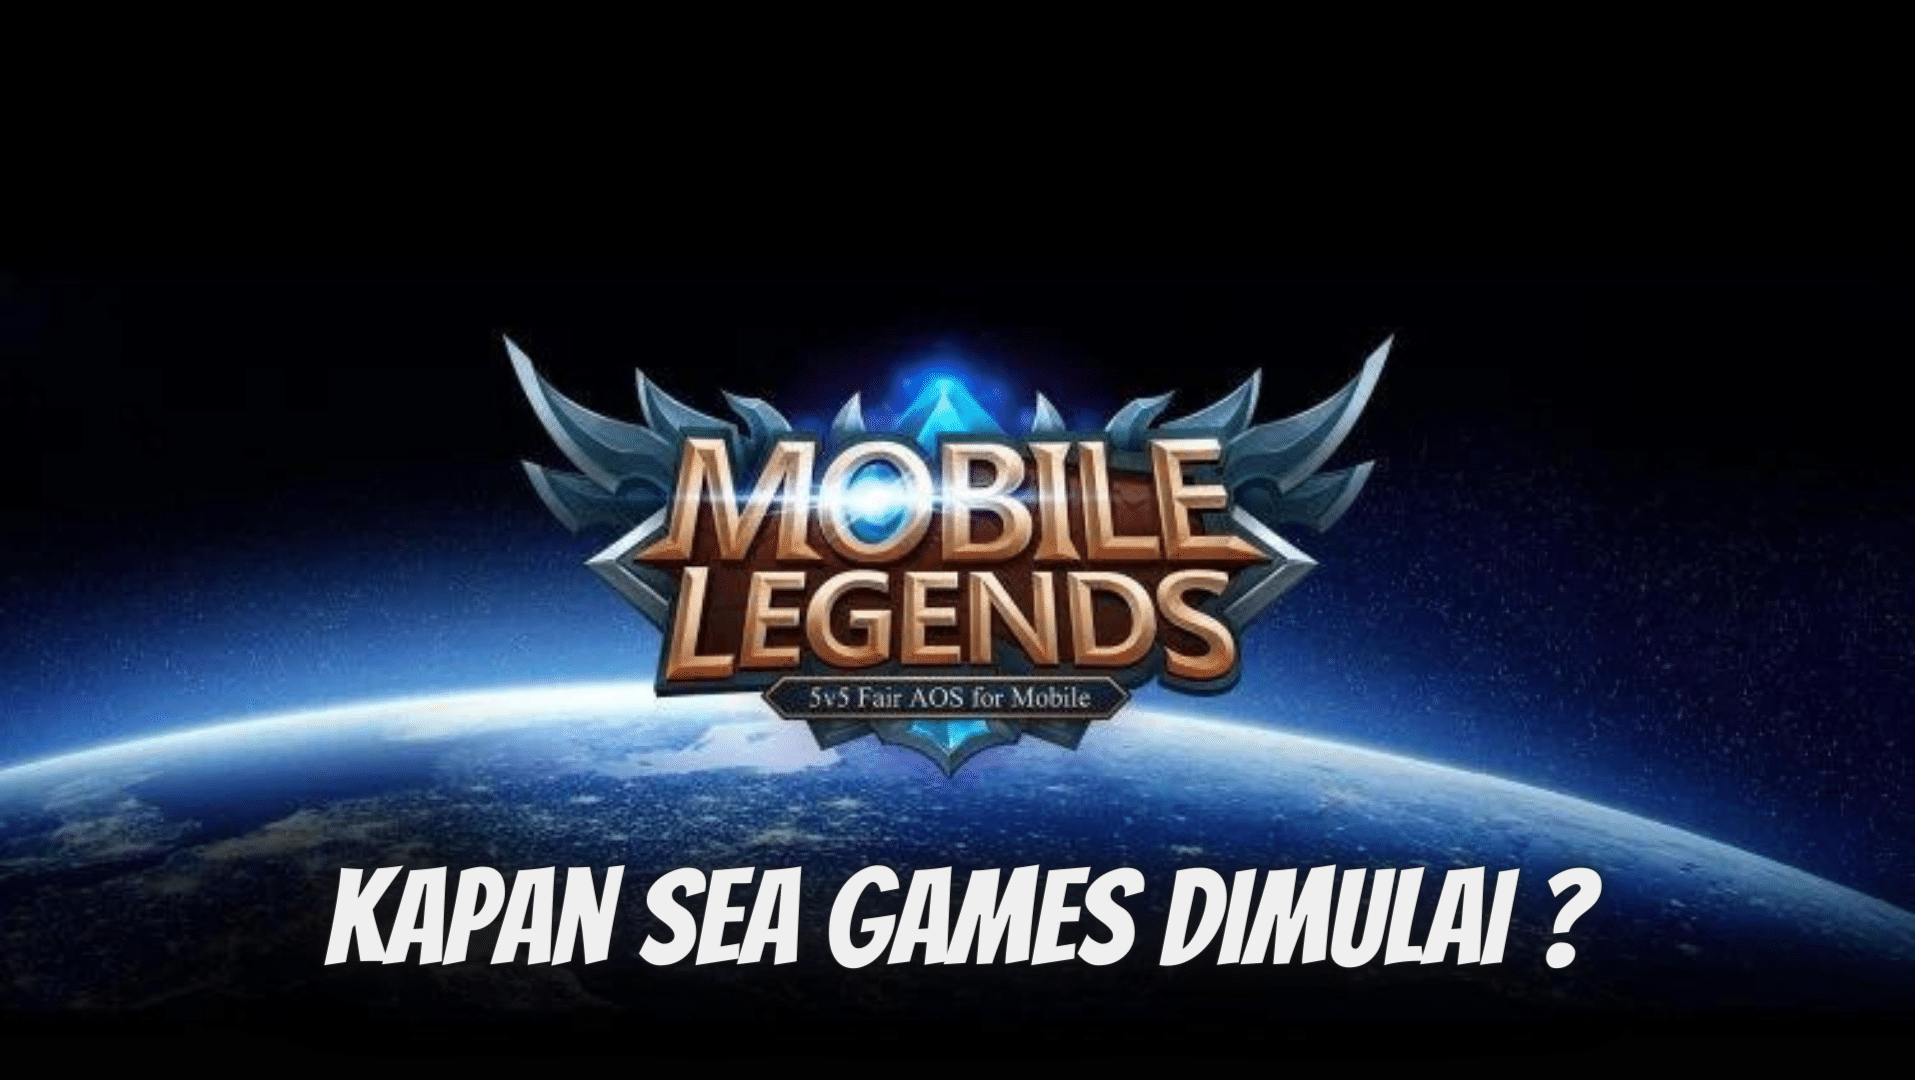 Kapan Sea Games Mobile Legends Dimulai